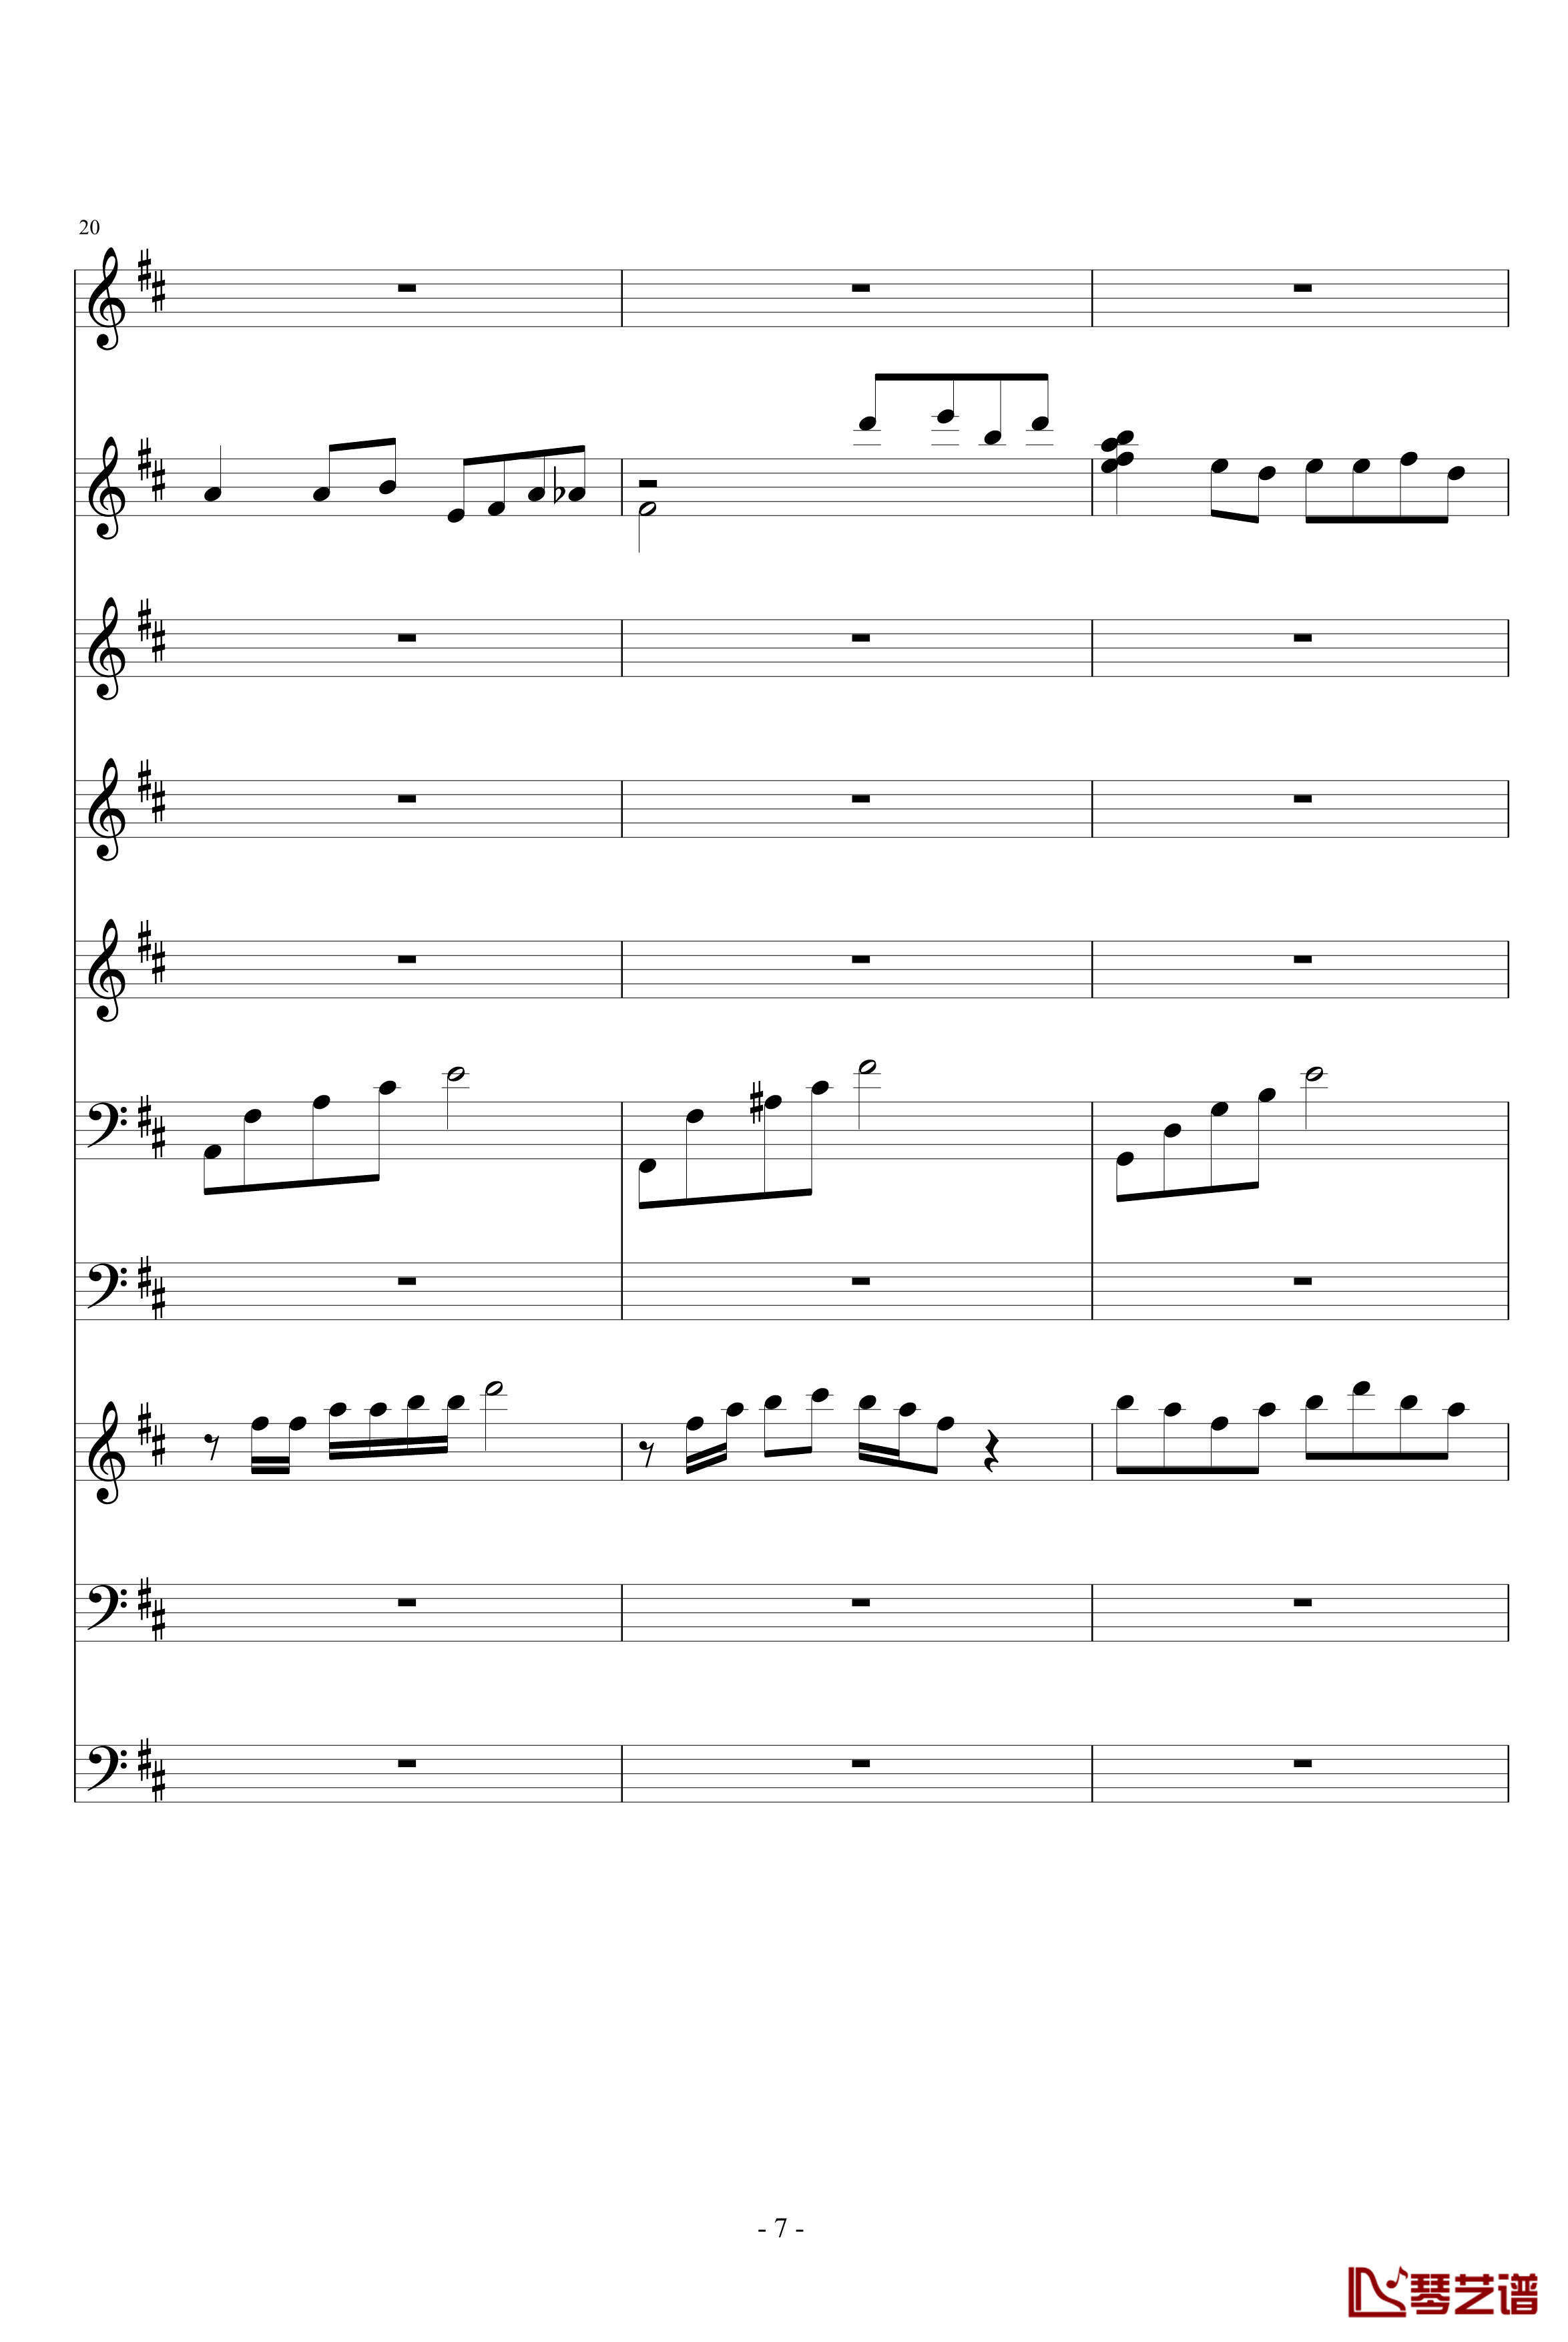 月落暗香坡钢琴谱-巴乌、笛子、琵琶、二胡、古筝-peterkingily7